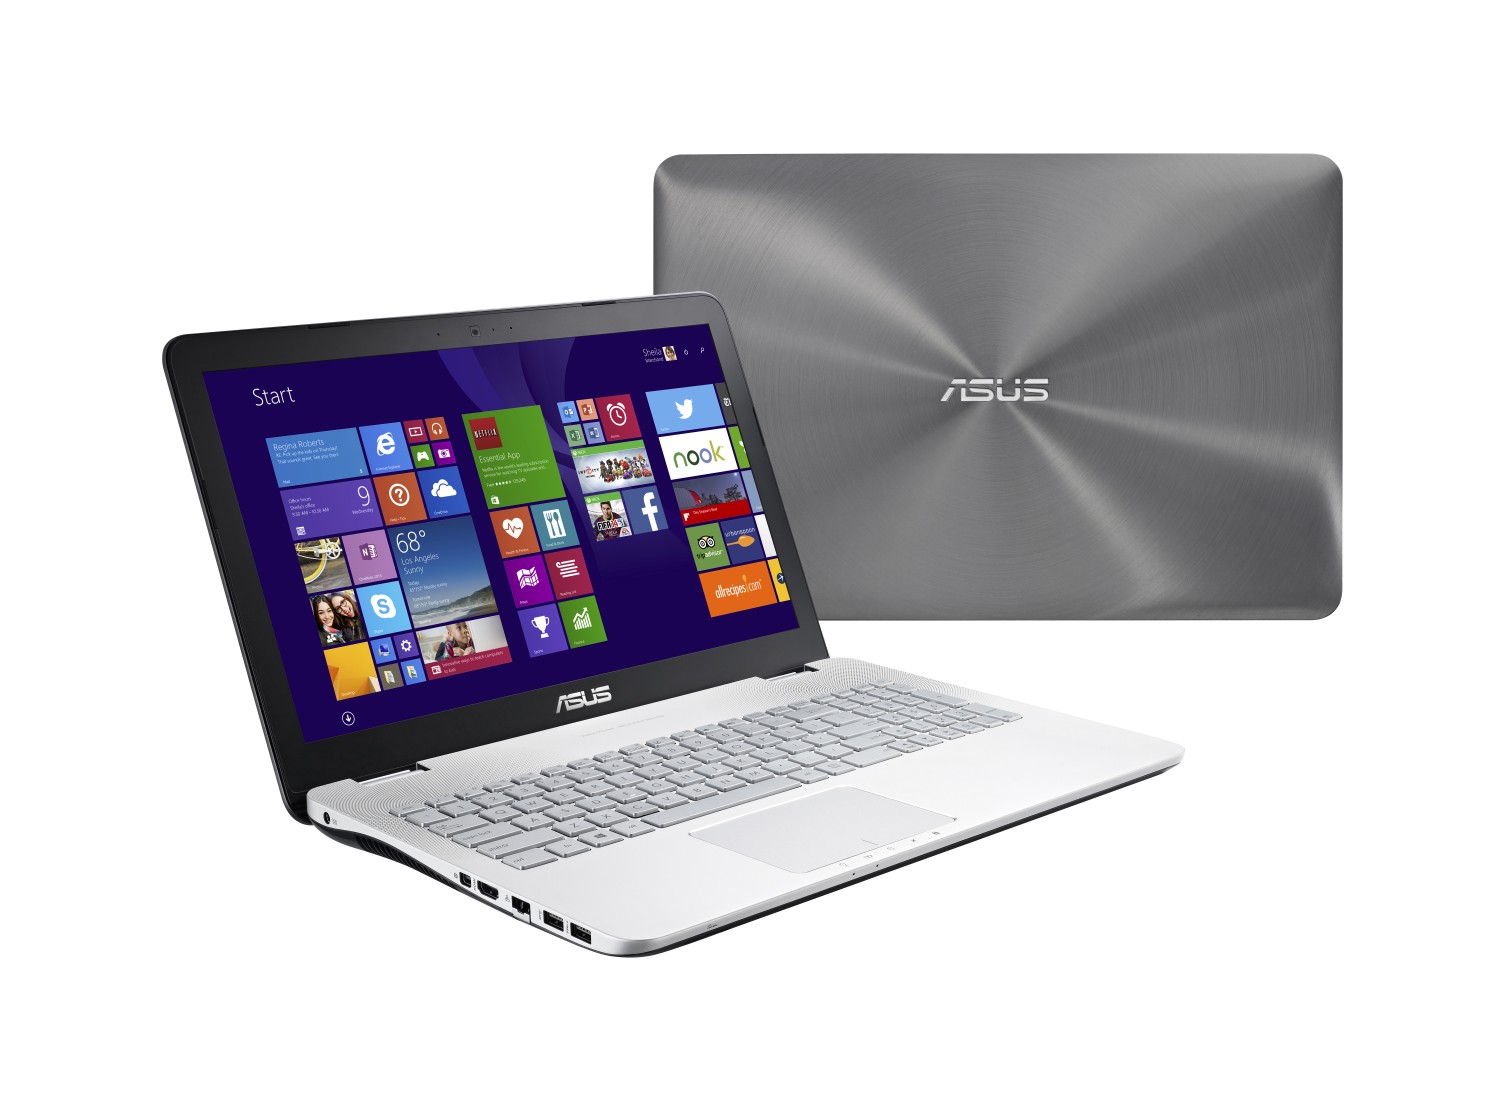 Asus představil multimediální notebooky N551 s kvalitním zvukem